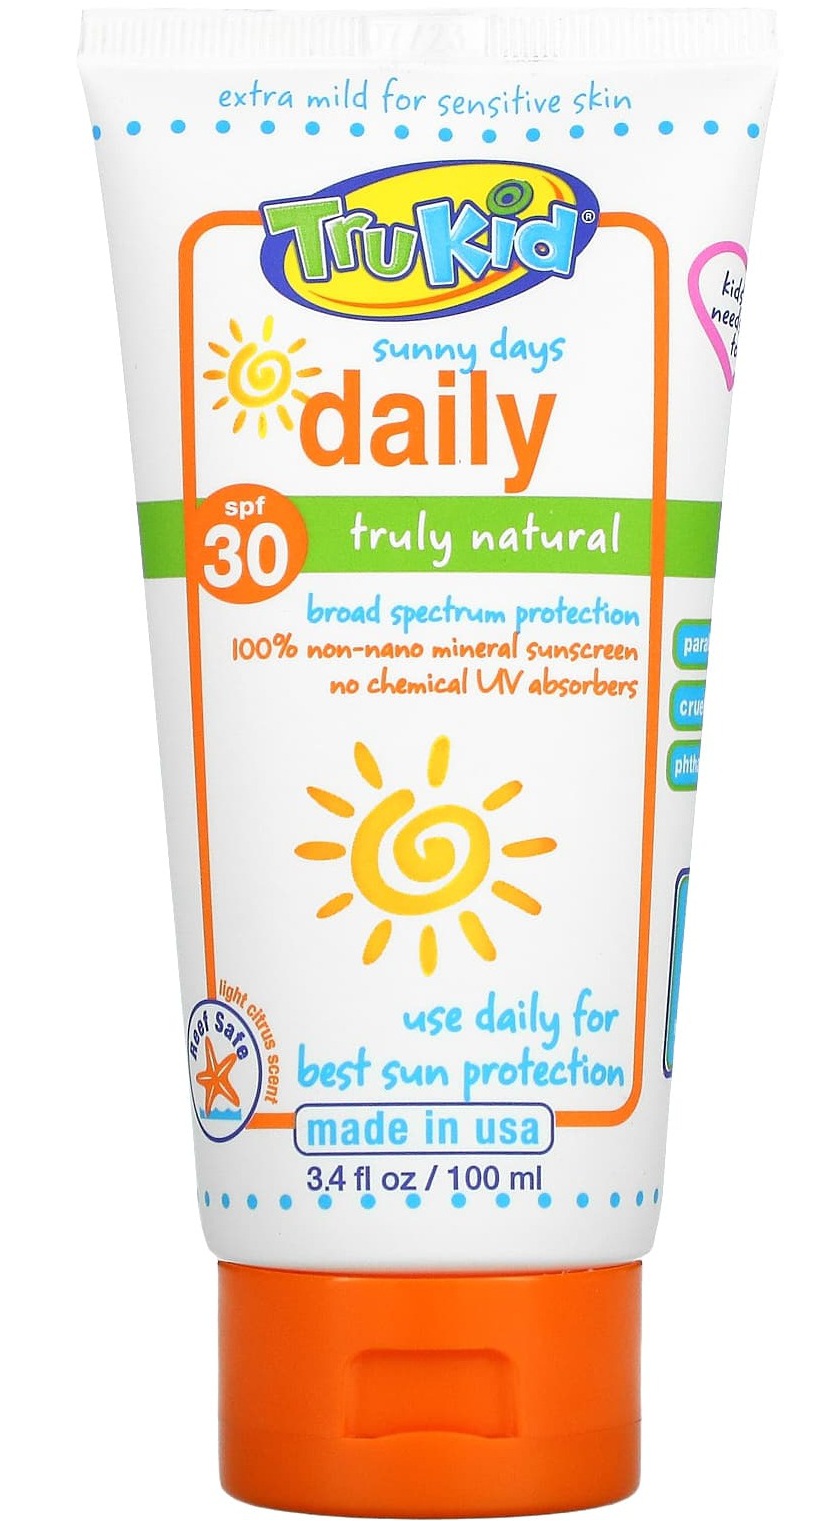 Trukid Sunny Days Daily SPF30 Sunscreen